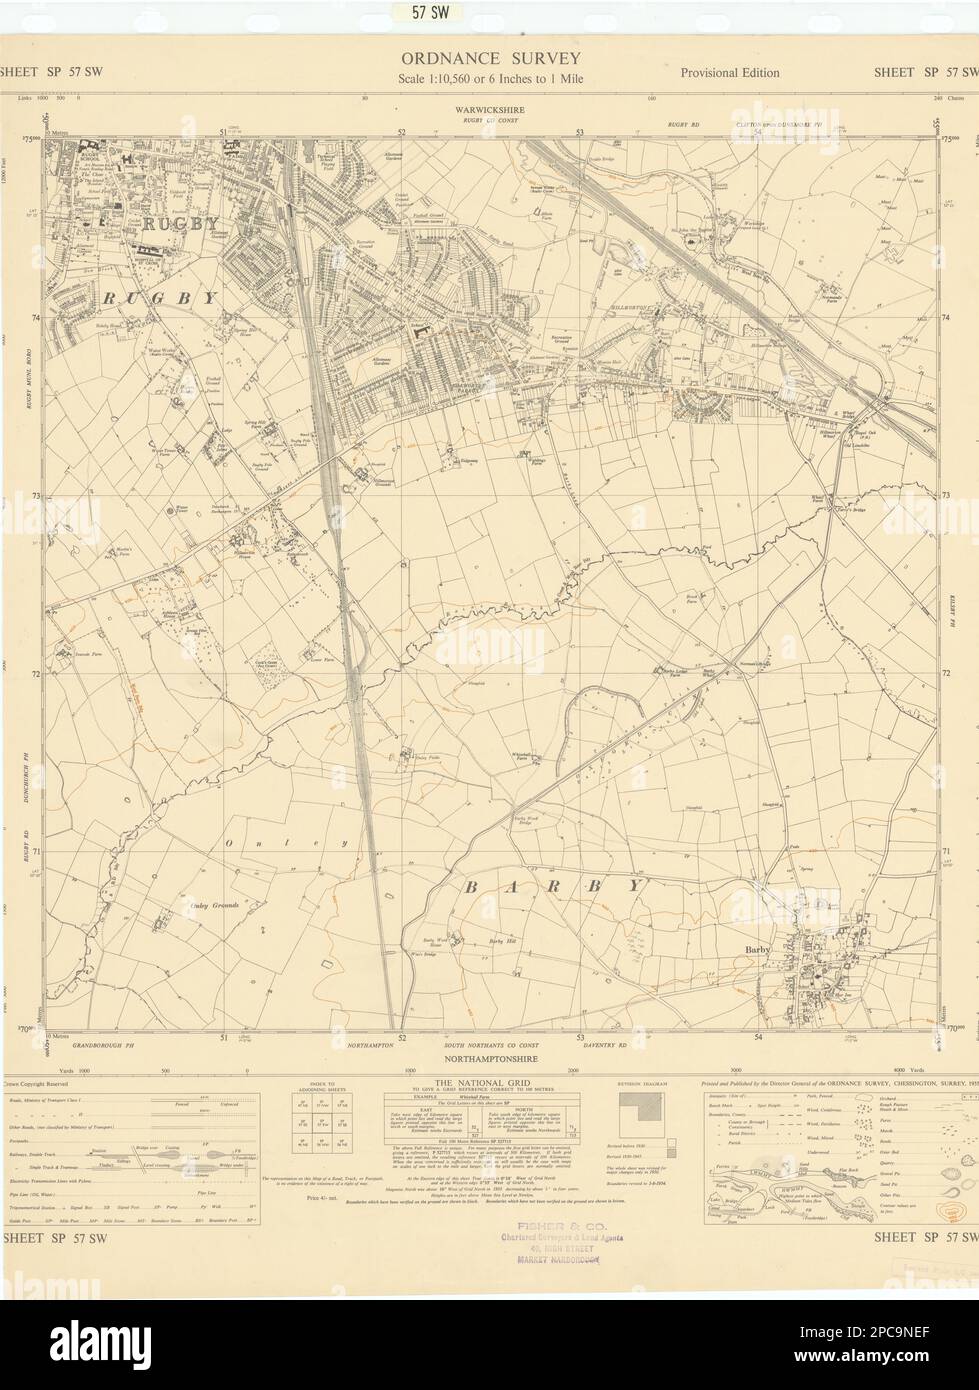 Hoja de encuesta de ordnance SP57SW Warwickshire Rugby Hillmorton Barby 1955 mapa antiguo Foto de stock